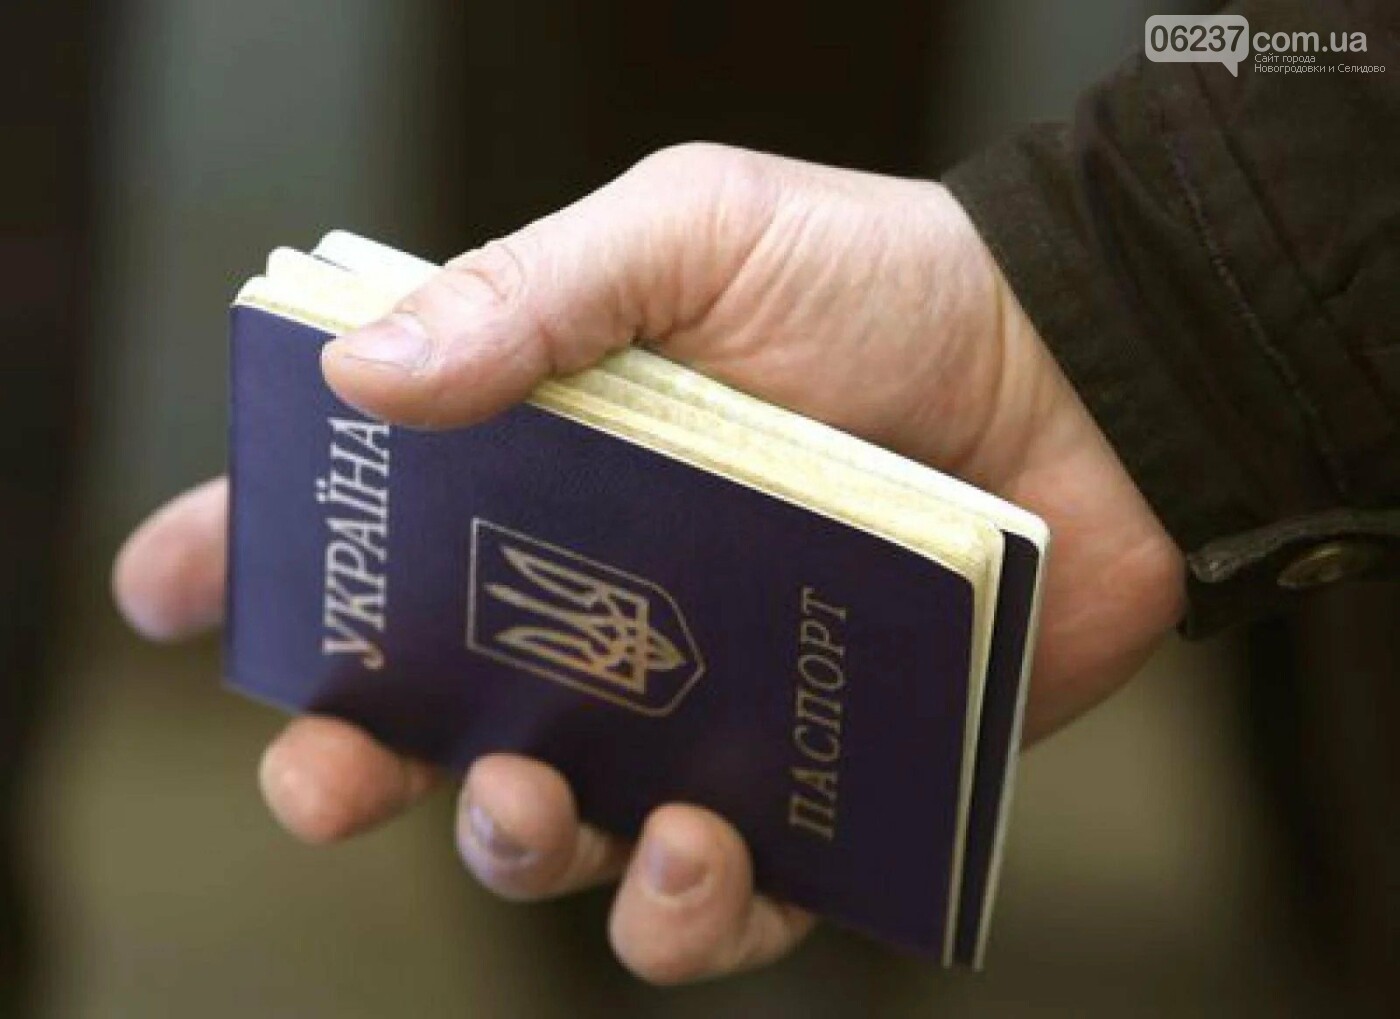 Без паспорта разрешат переводить не более 5 тысяч. Как меняются правила платежей в Украине с 28 апреля, фото-1